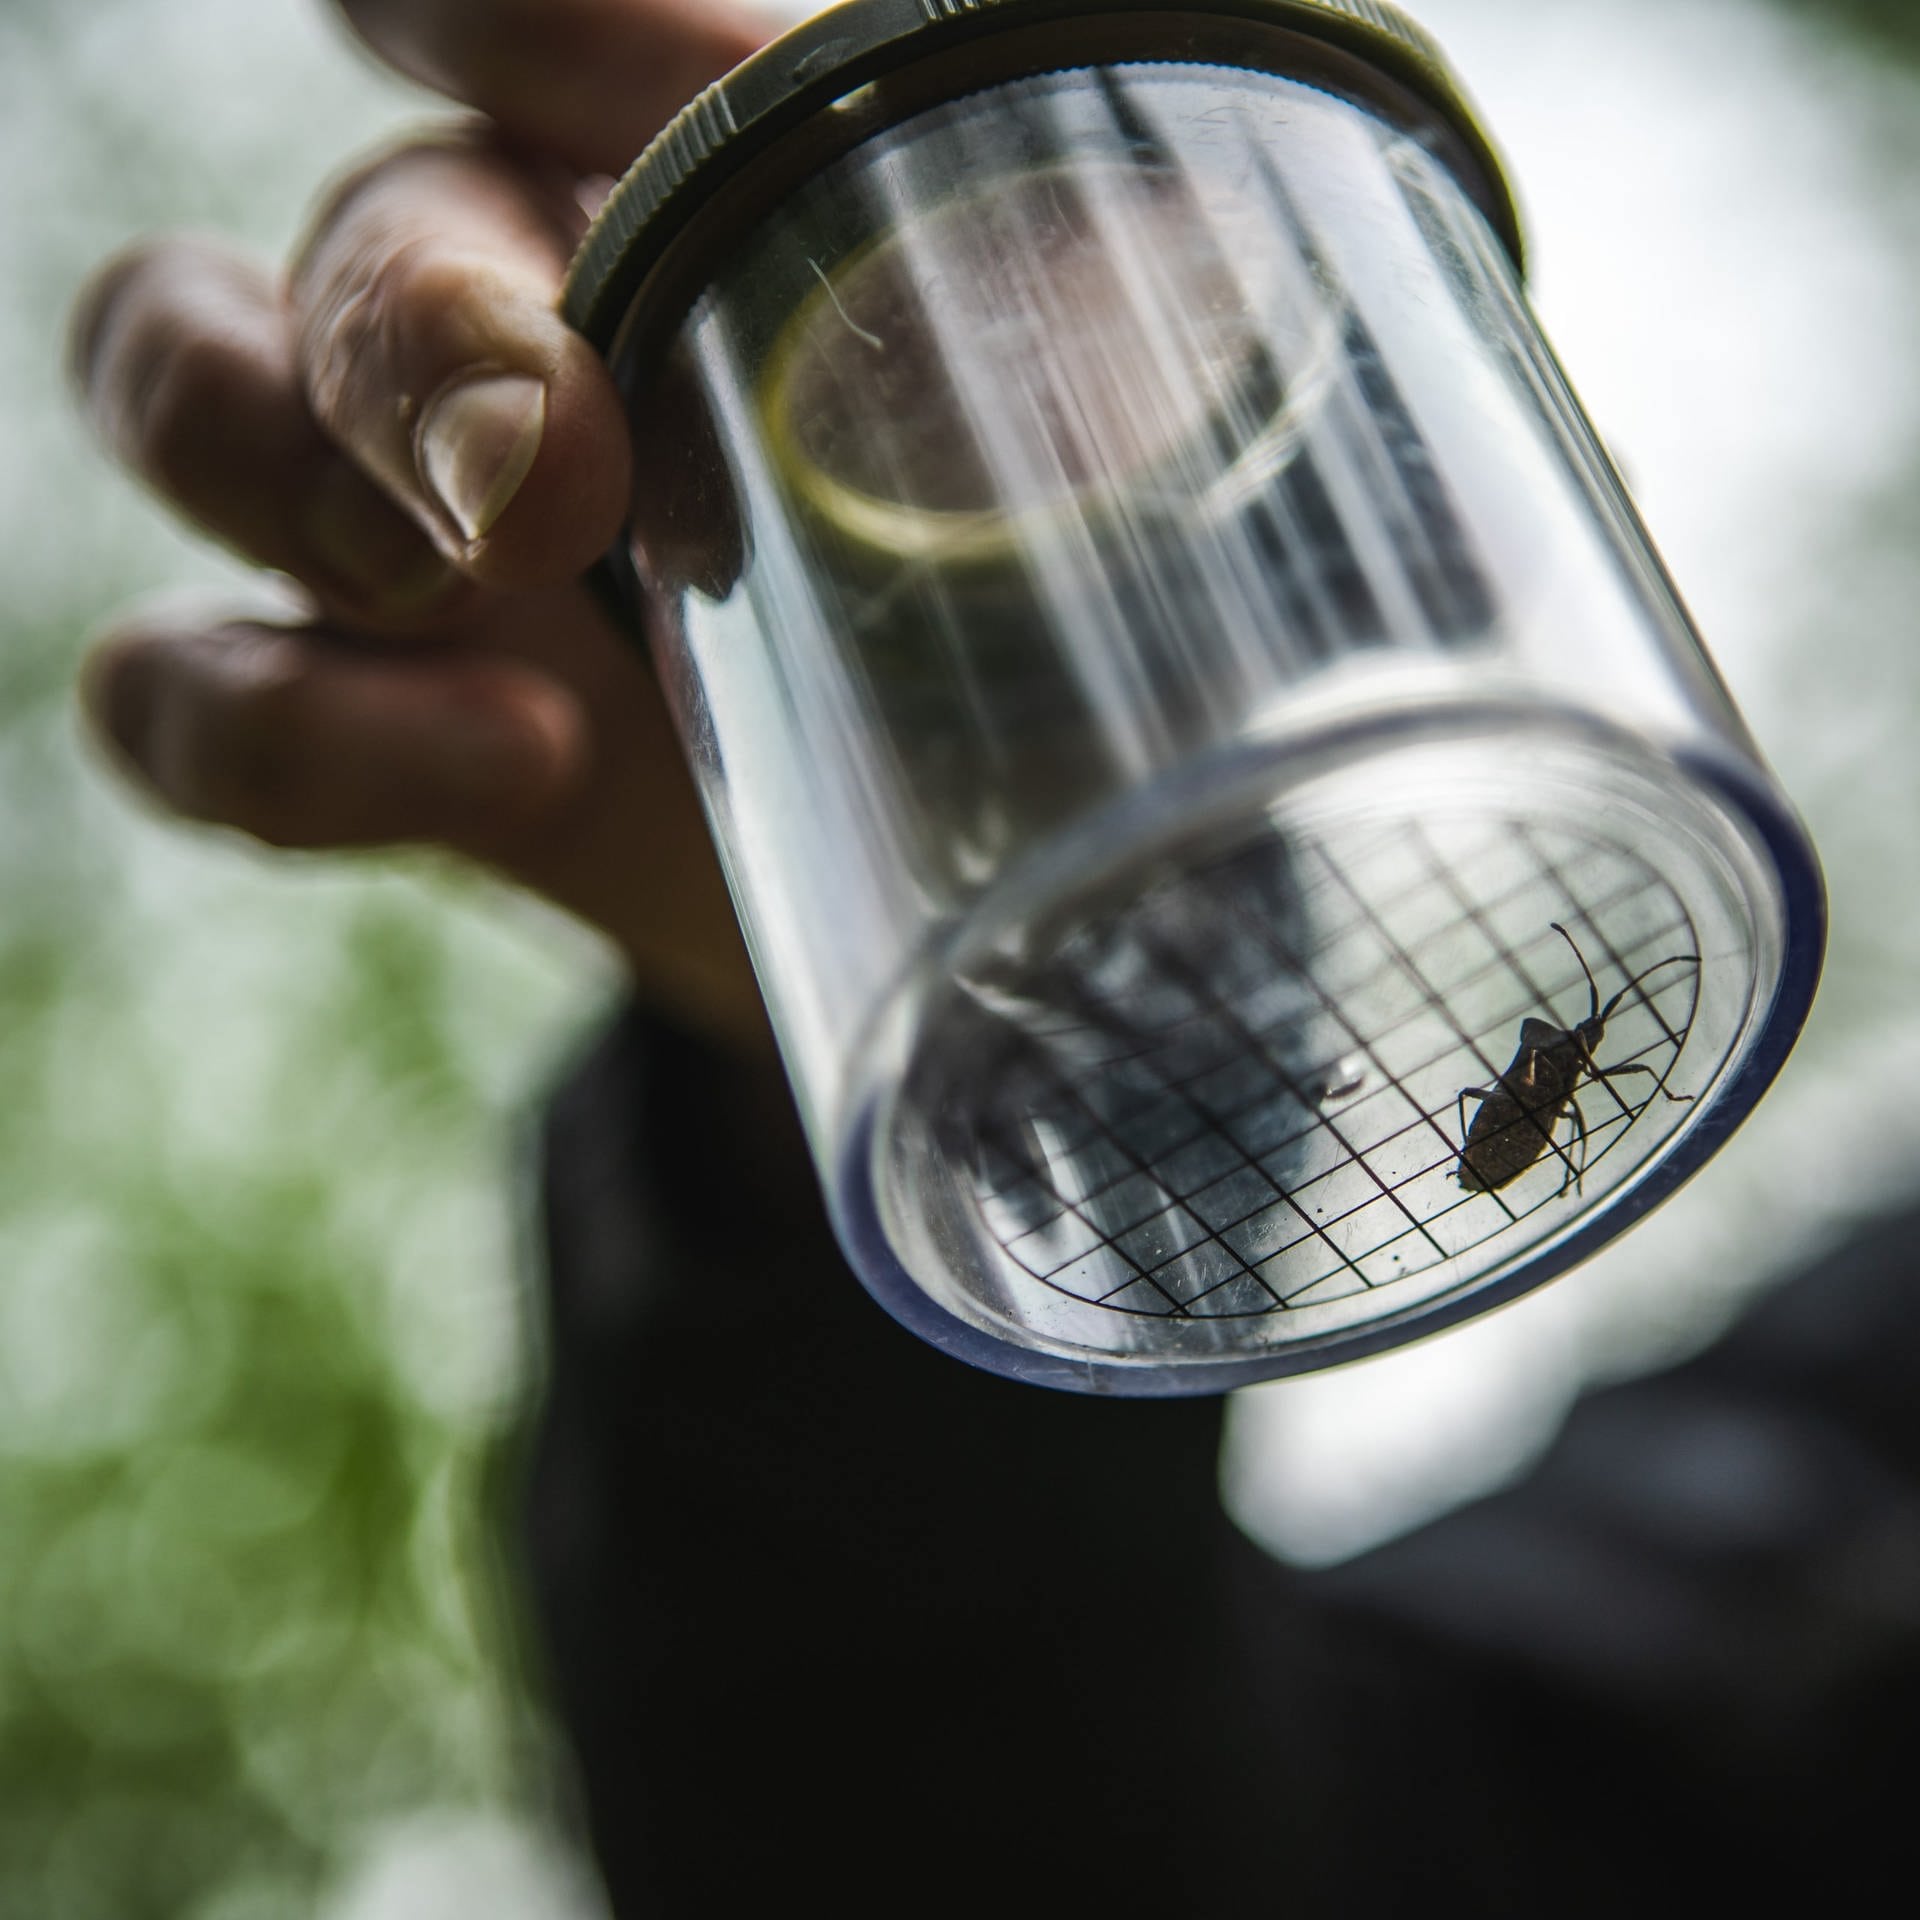 Käfer oder Wanze – Umwelt AG in Bad Neuenahr erforscht die Natur